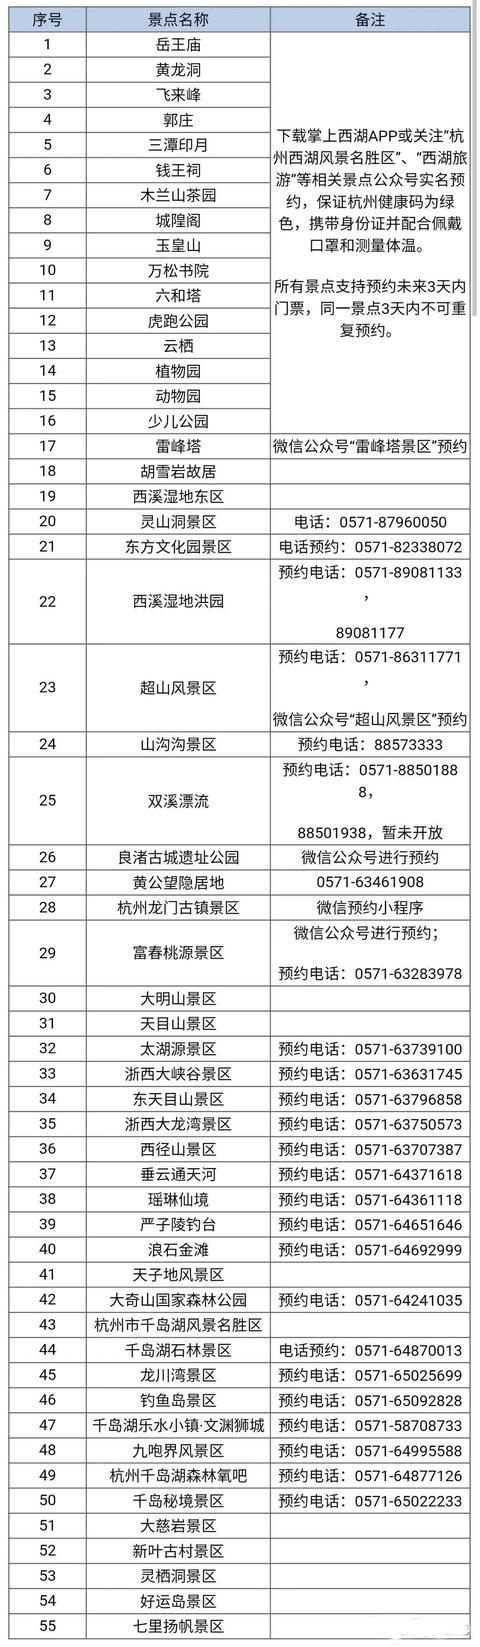 杭州免费景点有哪些 附景点名单